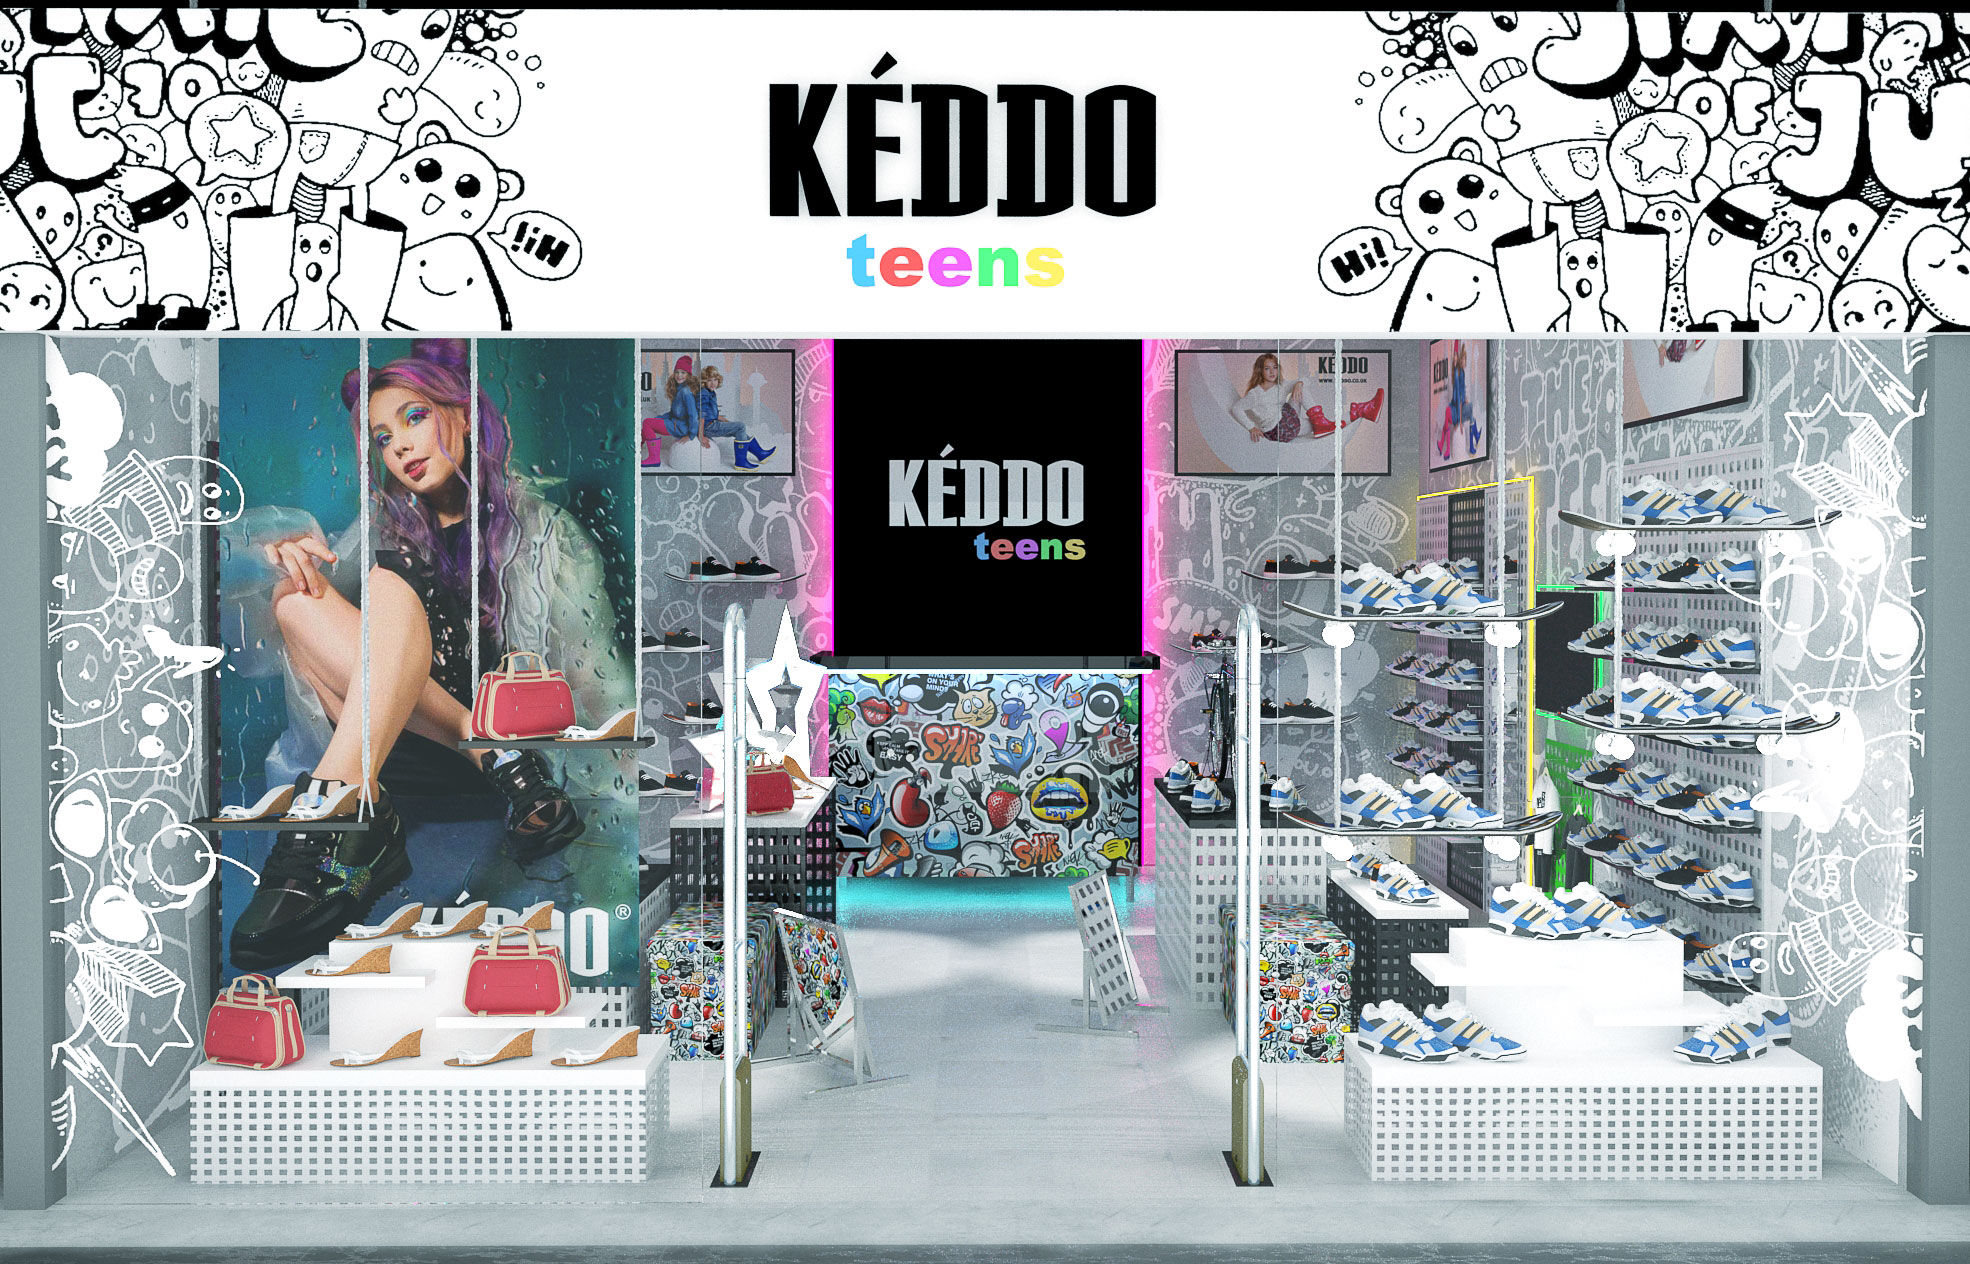 Стиль магазинов Keddo Teens